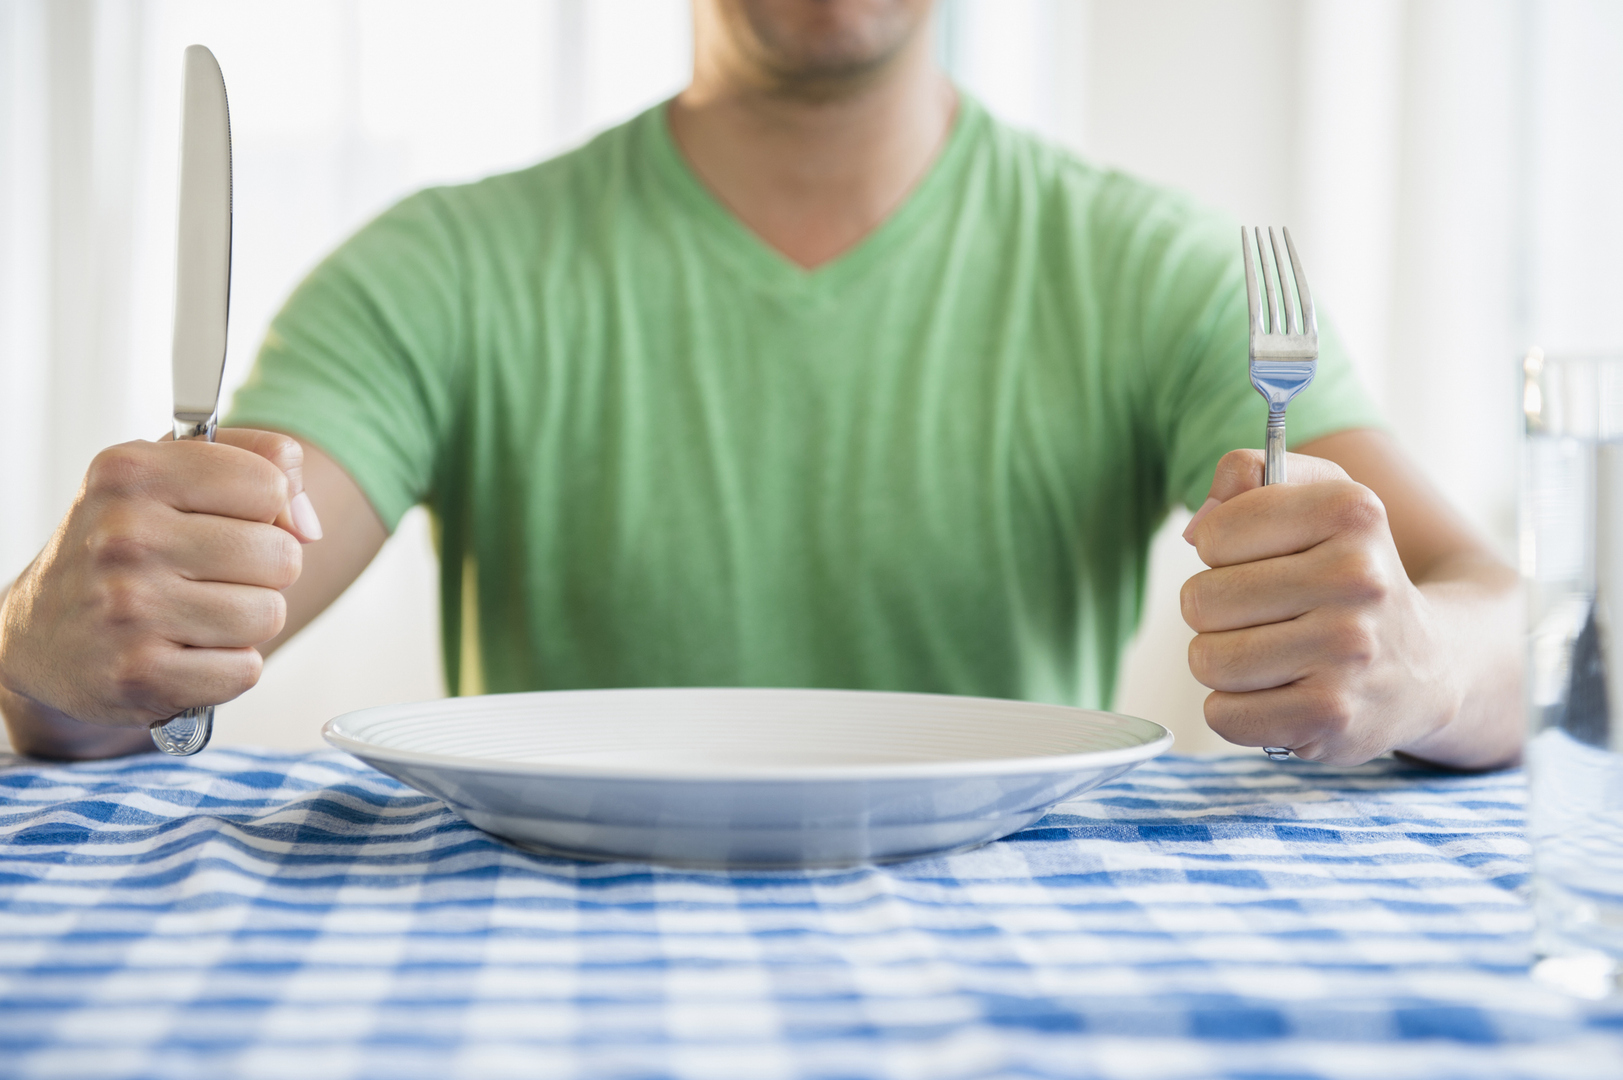 دراسة: الشعور بالجوع يمكن أن يكون مرتبطا بتباطؤ الشيخوخة!